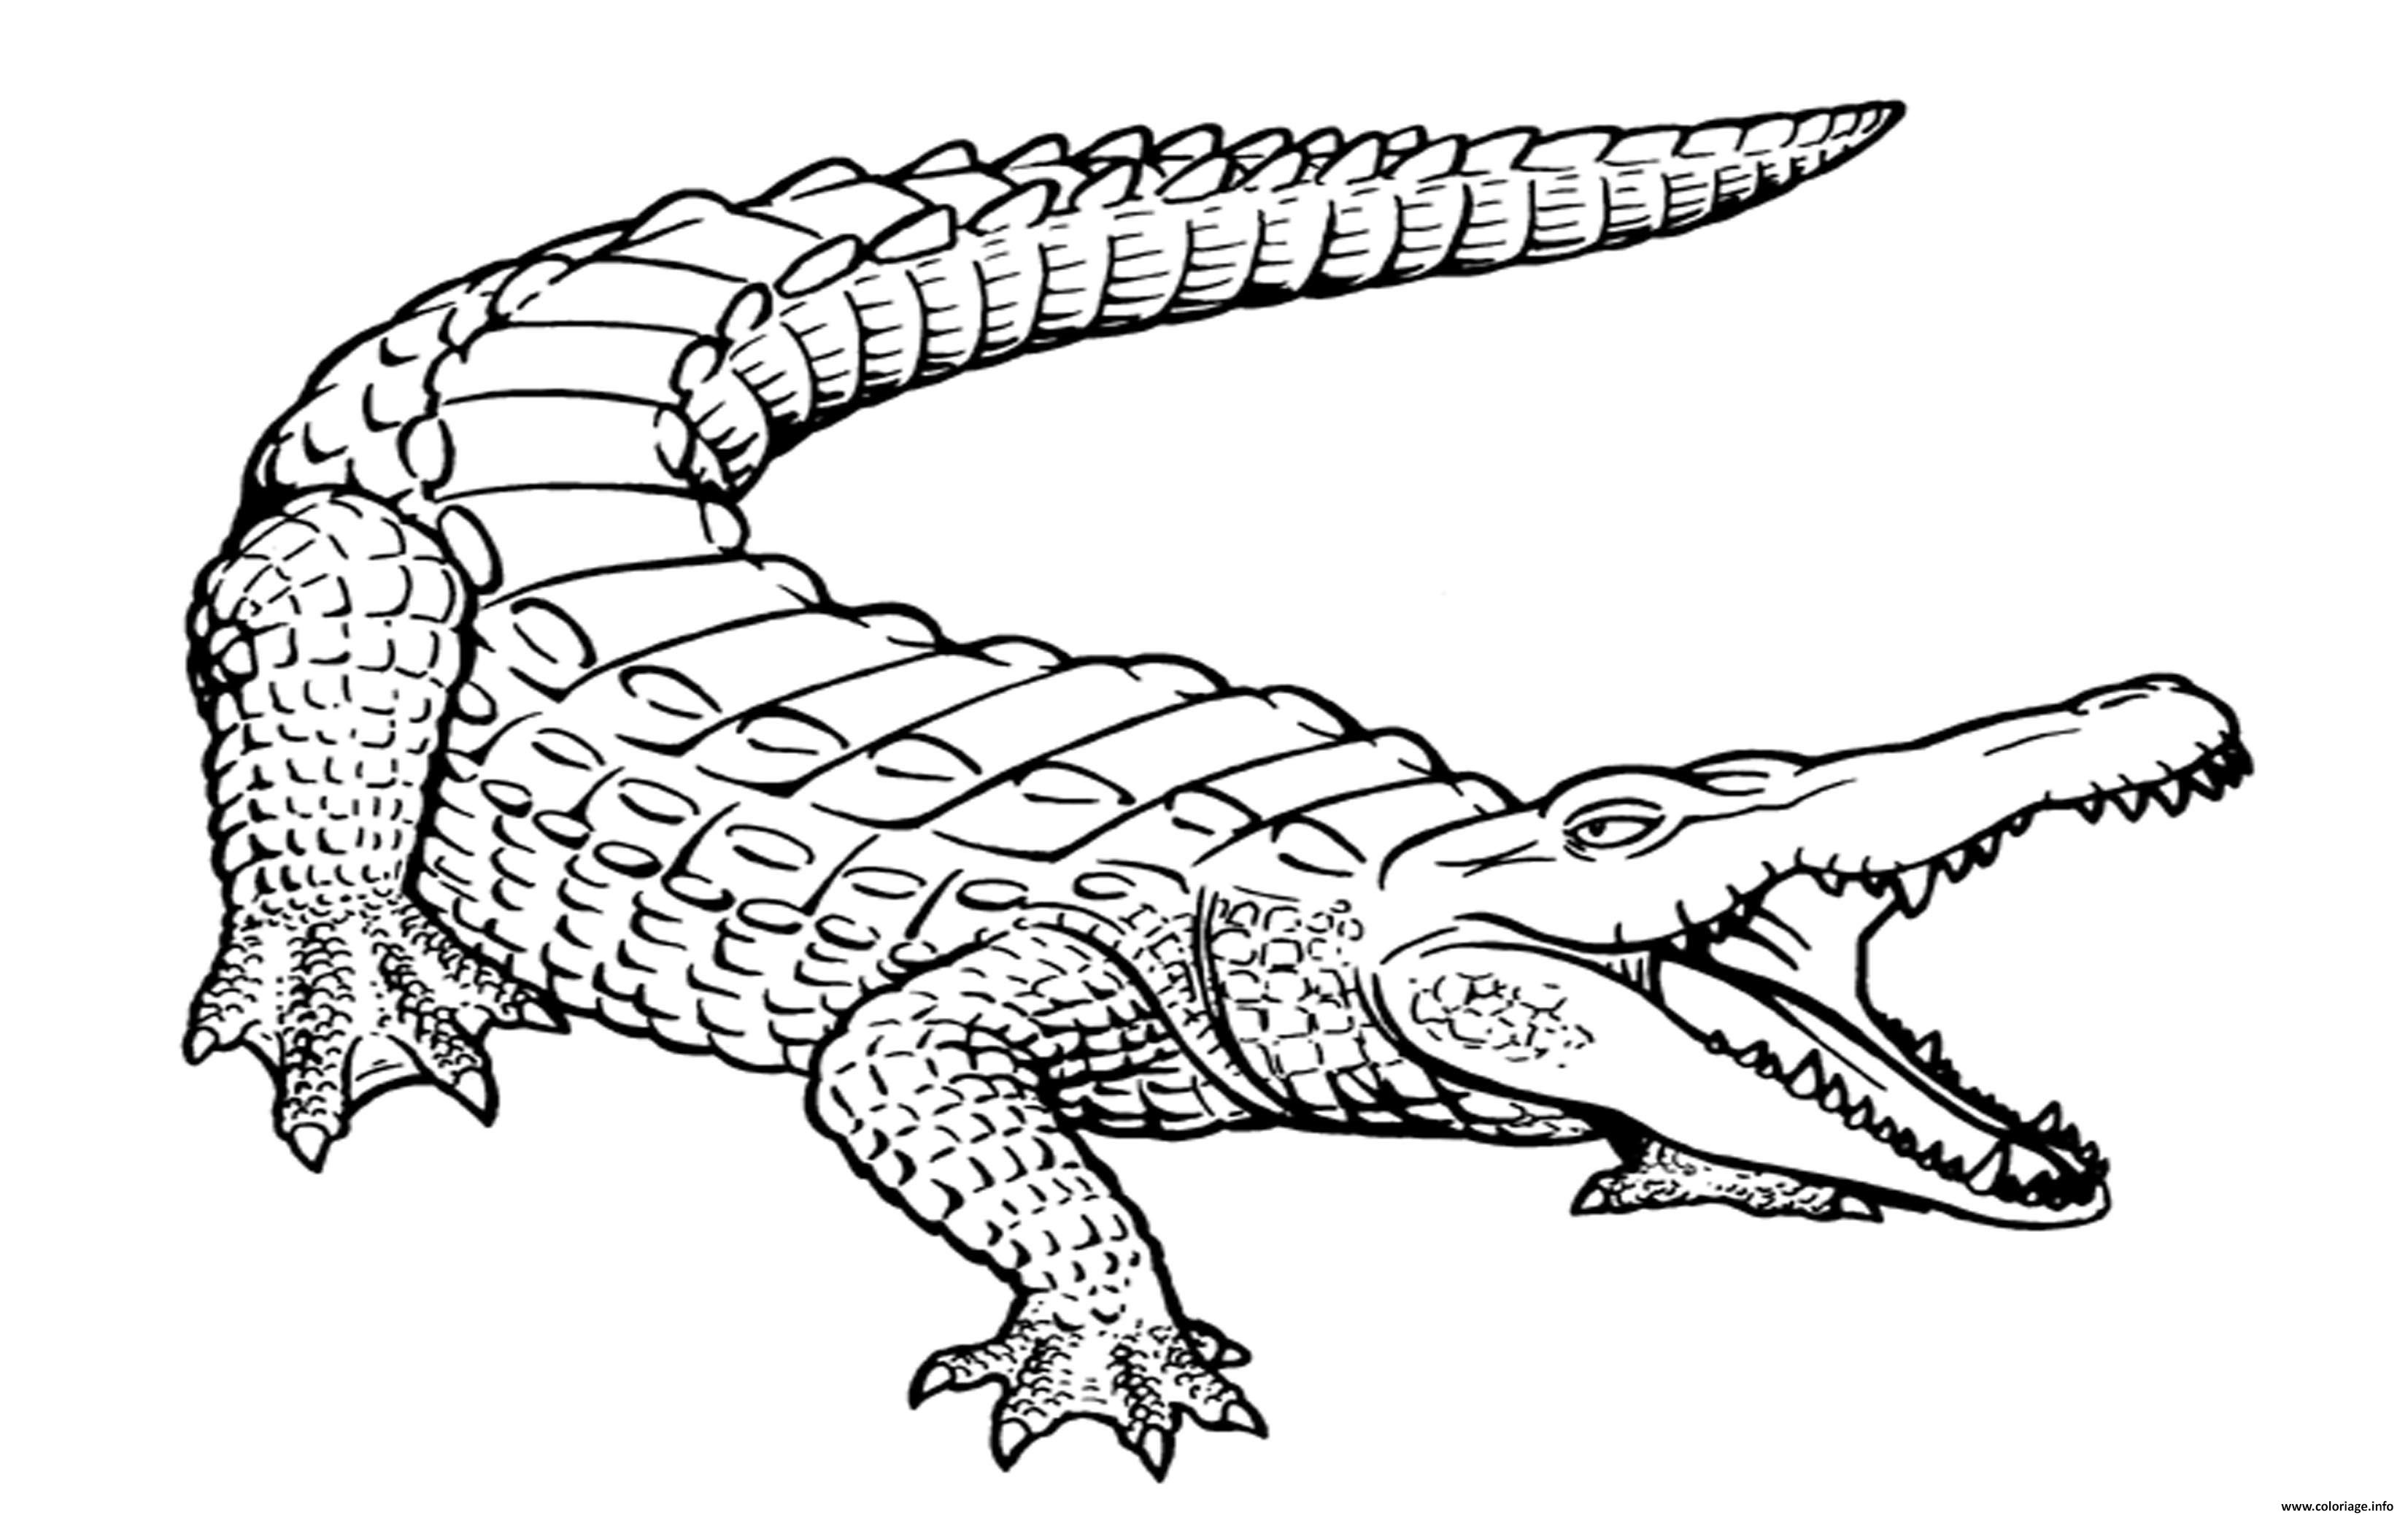 Comment dessiner un crocodile